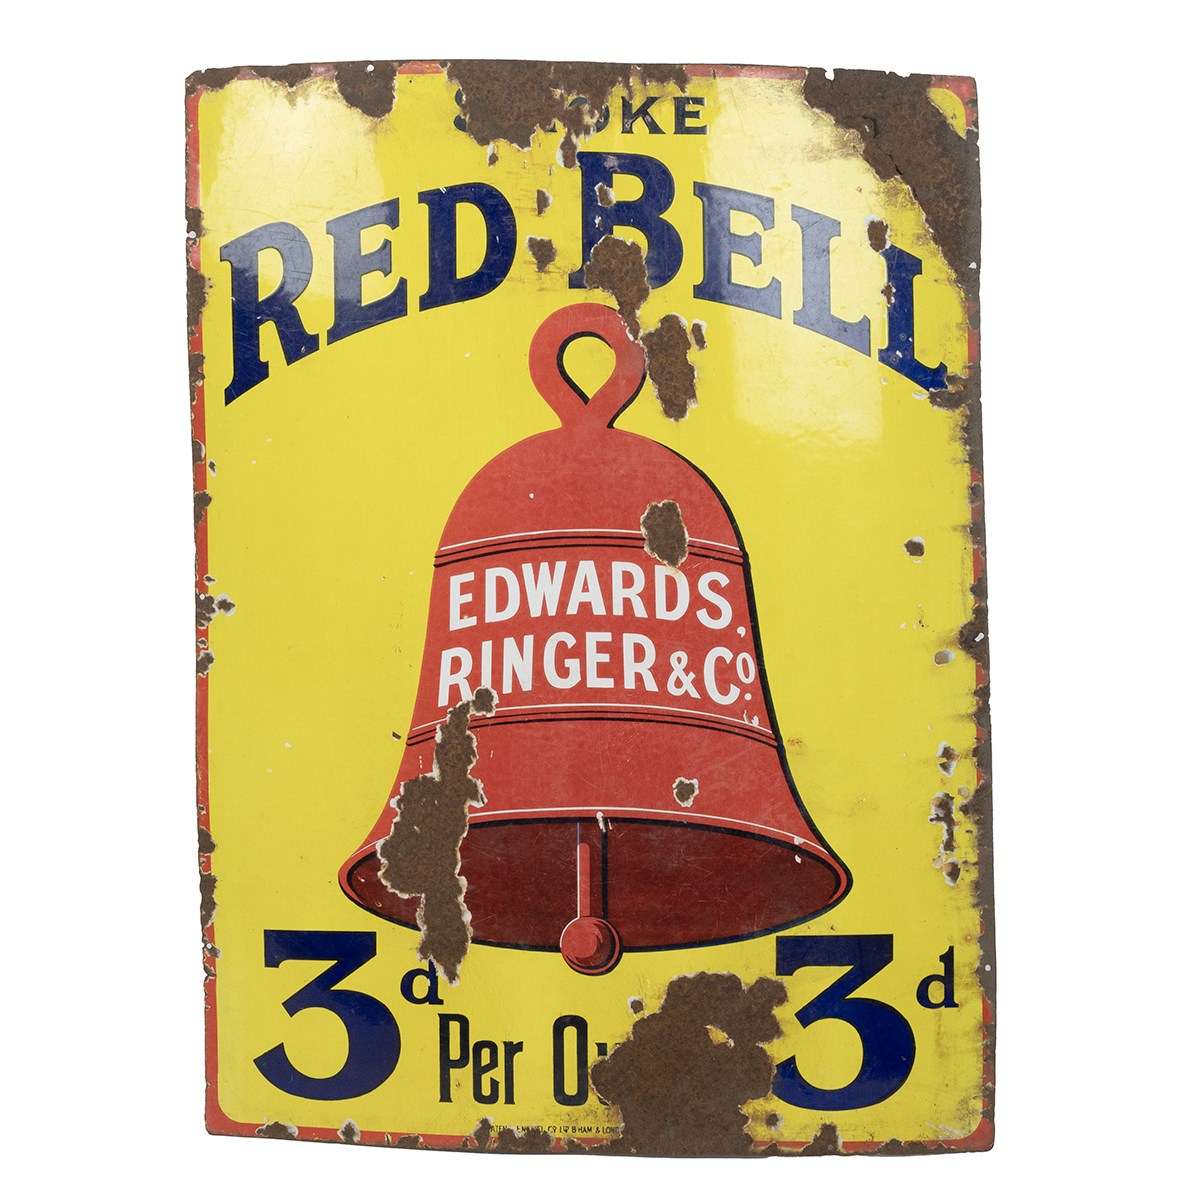 Vintage 'Smoke Red Bell, Edwards,Ringer & Co' Enamel Sign. Apparent wear. H 102cm, W 77cm.